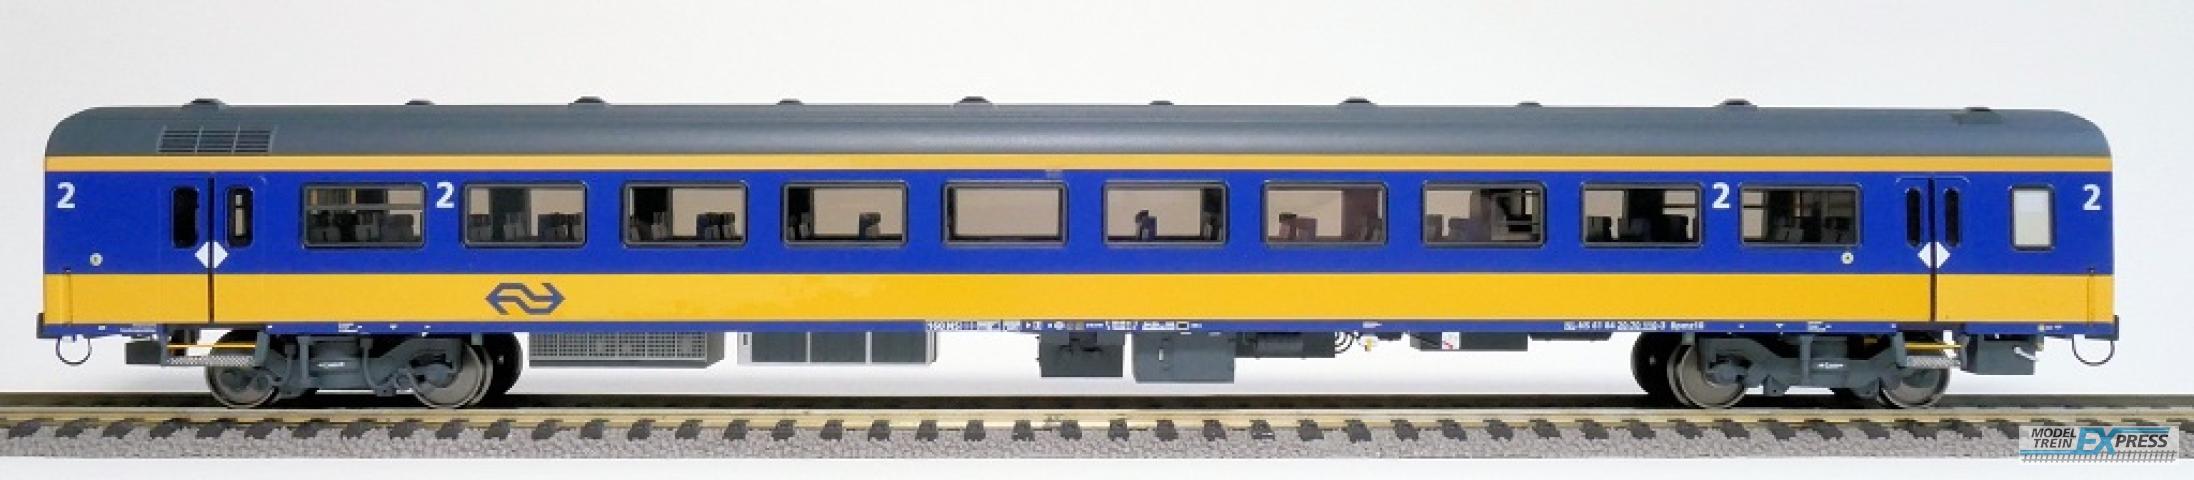 Exact-train 11007 NS ICRm Amsterdam - Rotterdam für den Inlandseinsatz Reisezugwagen Bpmz10 (Farbe Gelb / Blau) , Ep. VI